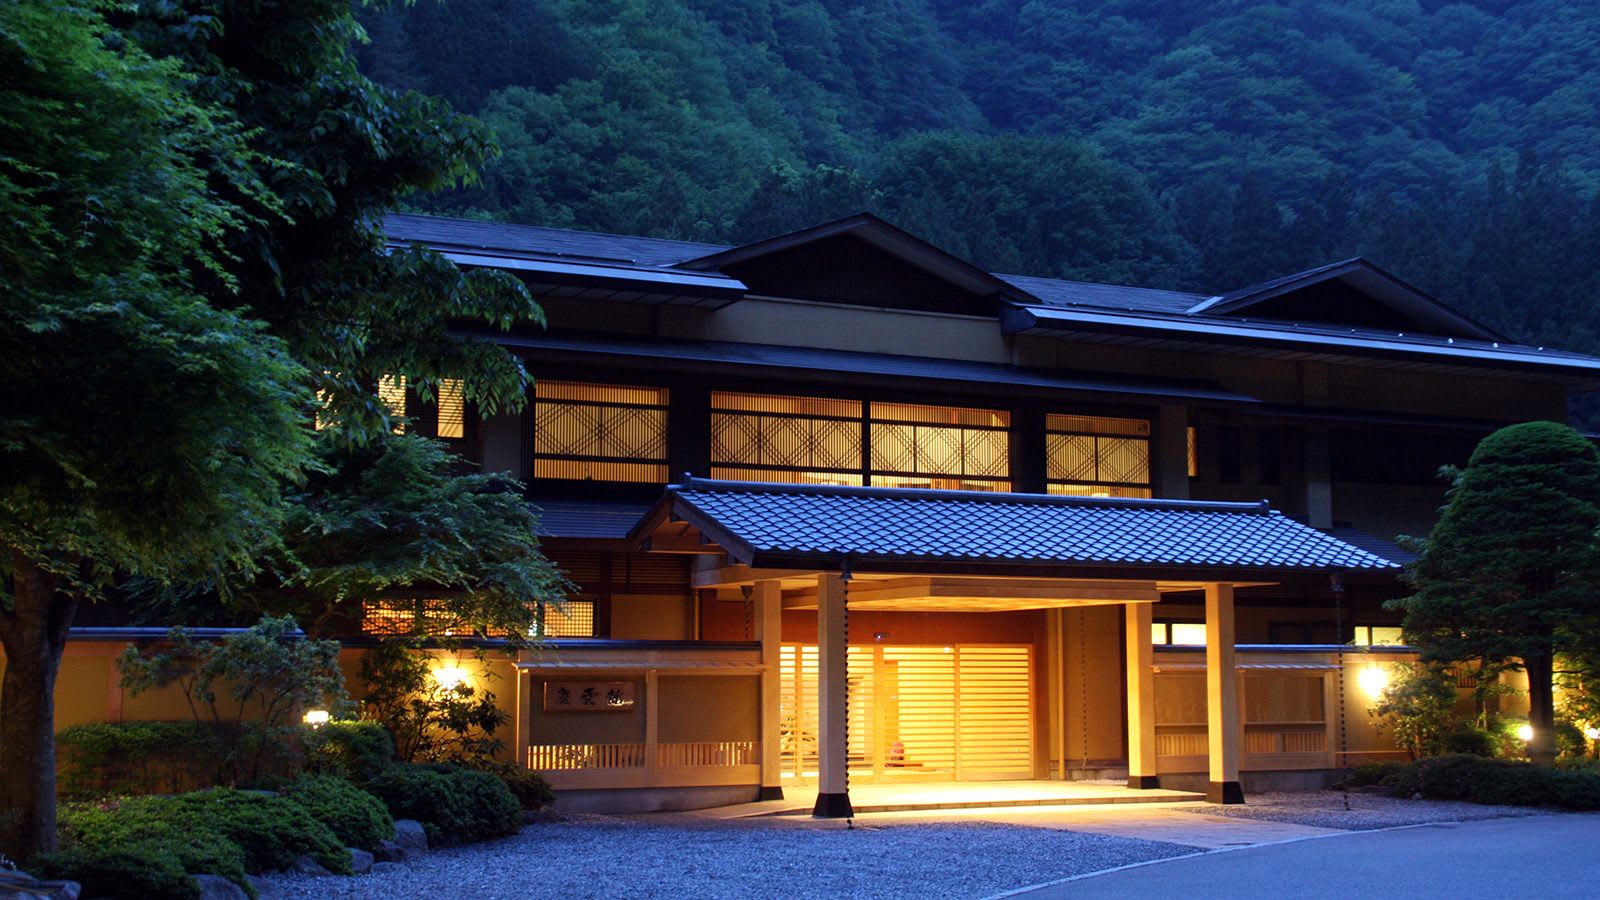 أقدم فندق في العالم شيّد قبل 1300 عام باليابان.. هل ما زال يستقبل النزلاء؟